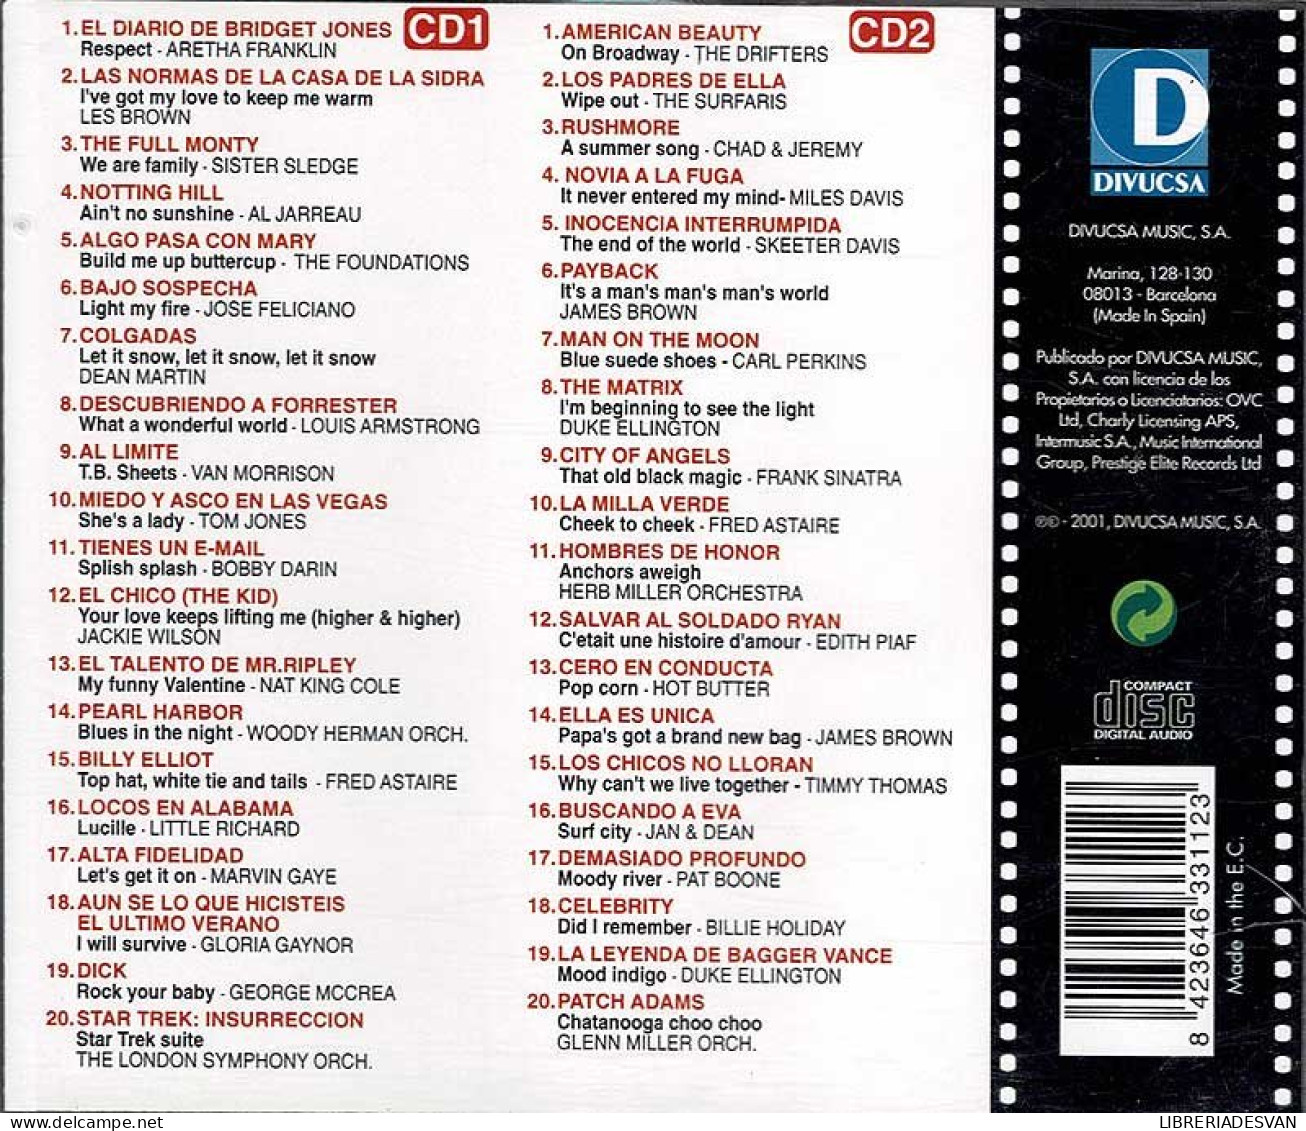 Los Mejores Temas Del Cine De Hoy. 2 X CD - Musica Di Film